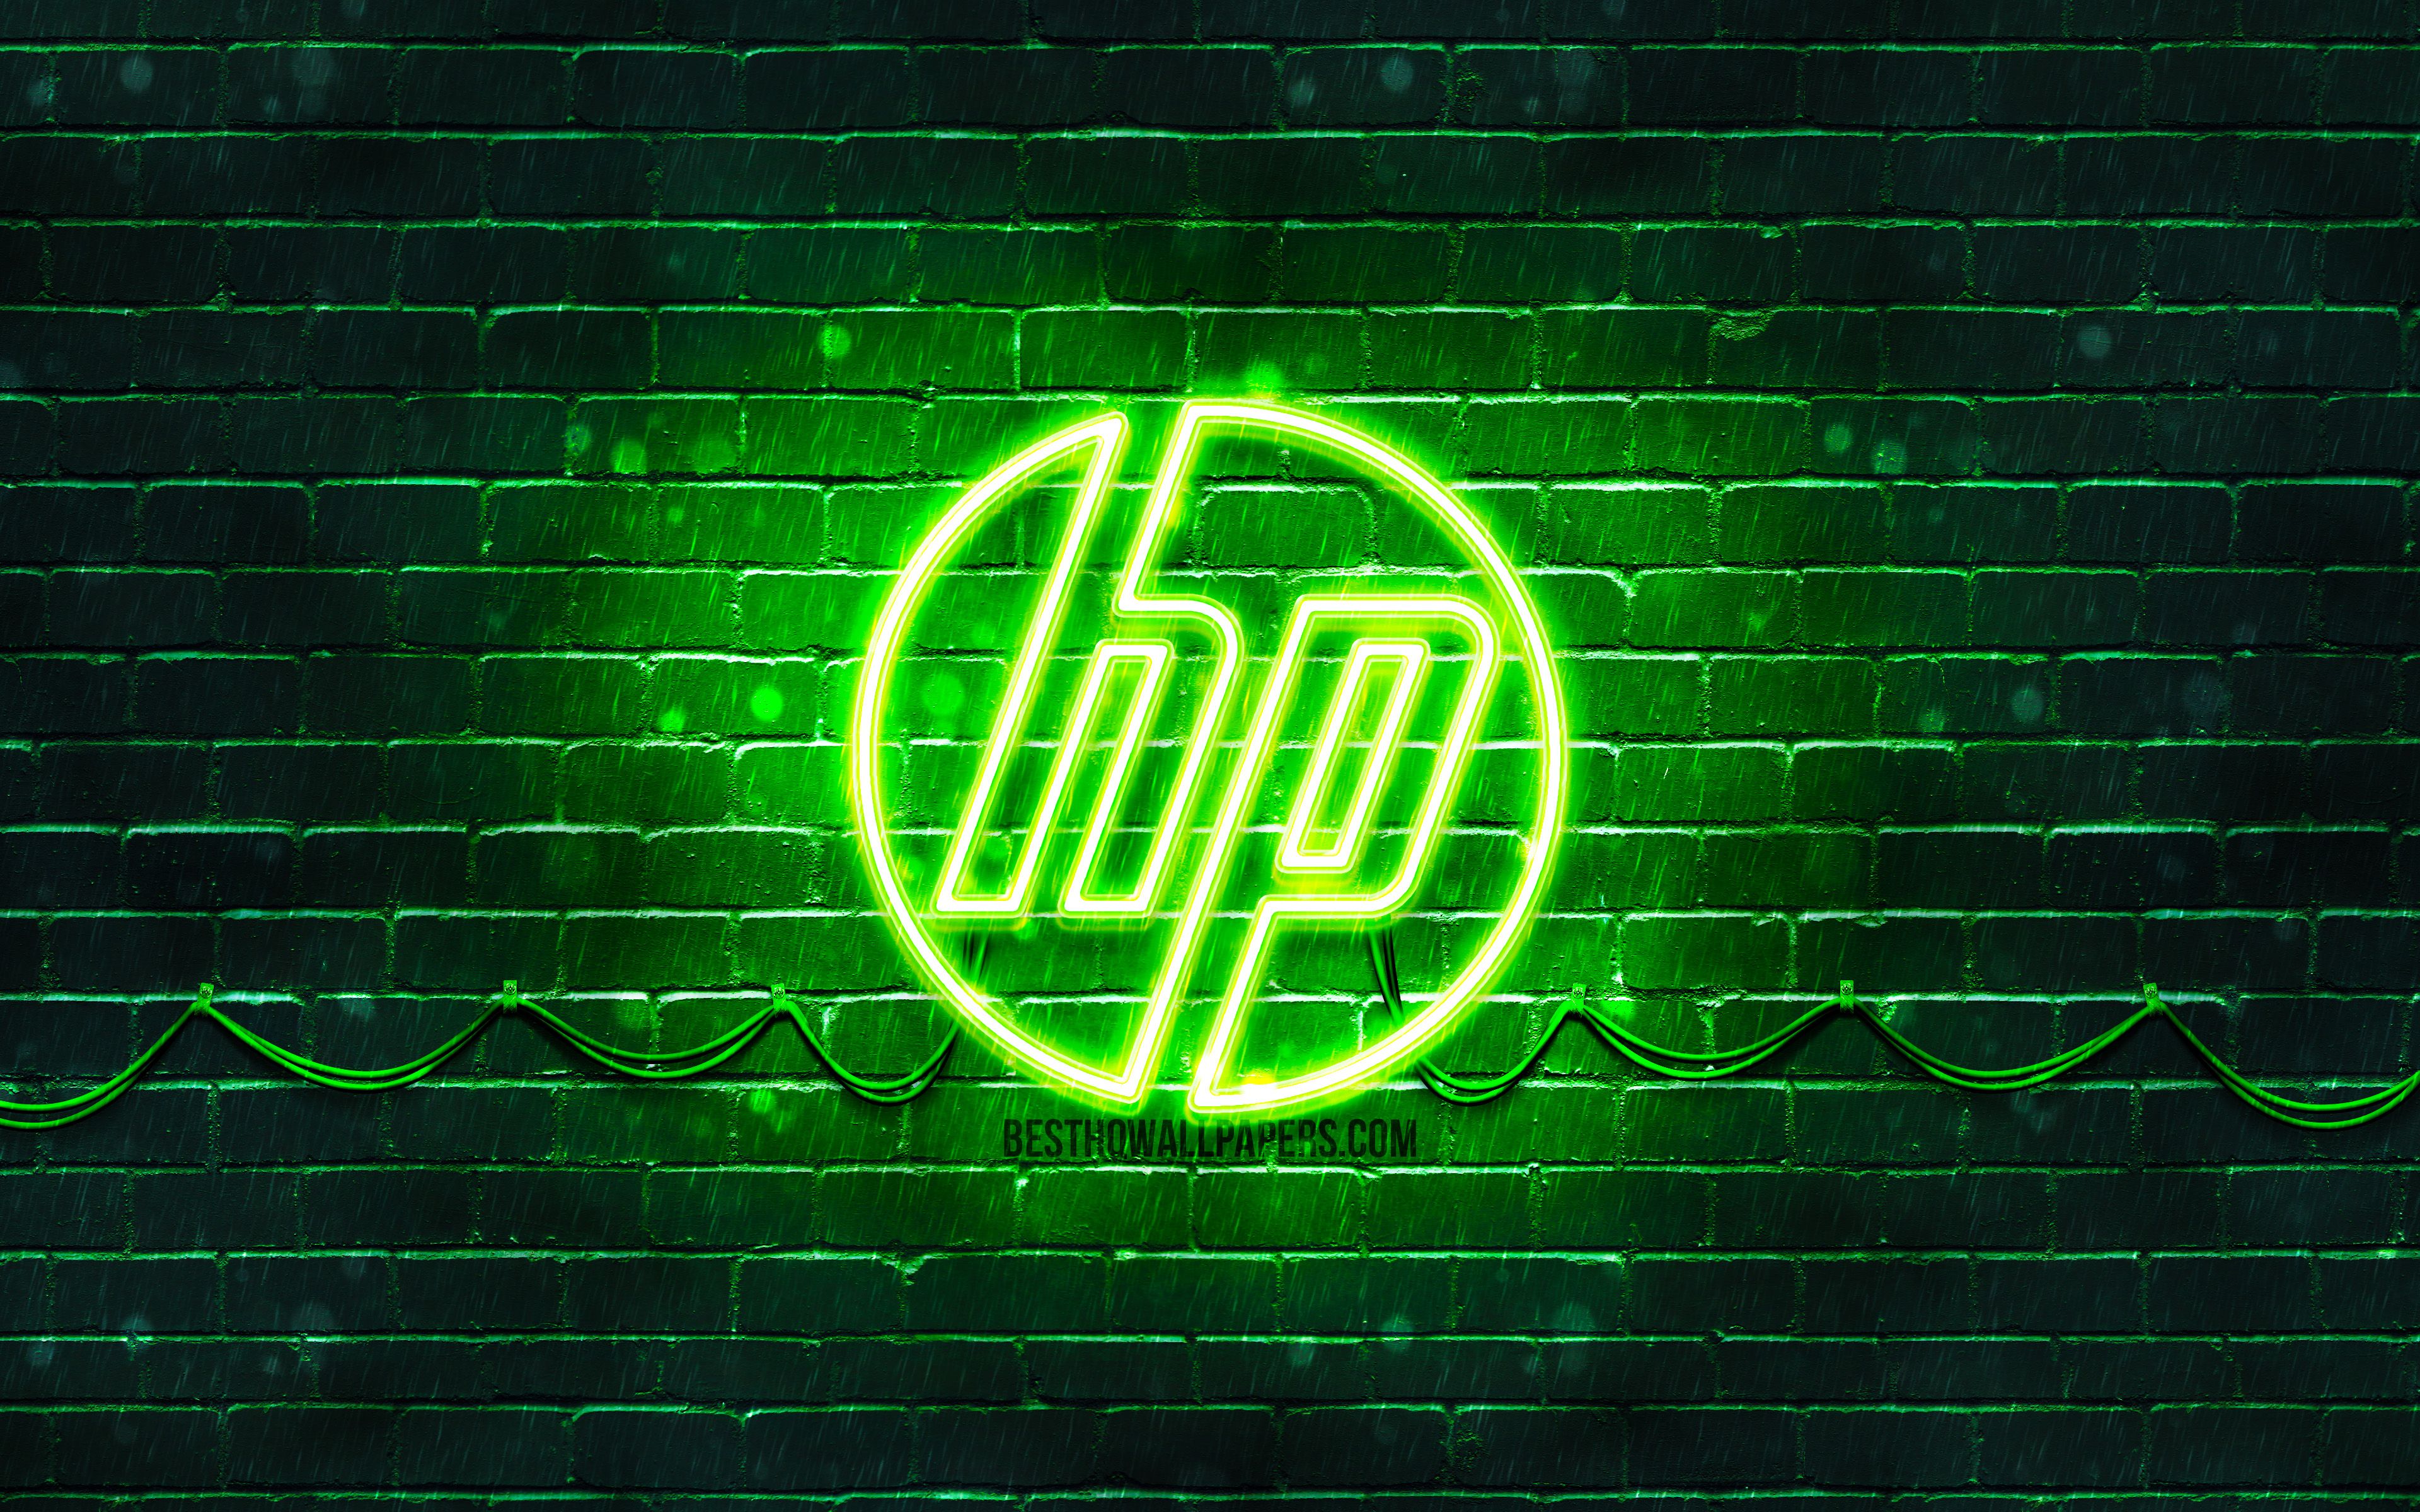 HP Pavilion Gaming Laptop Wallpaper